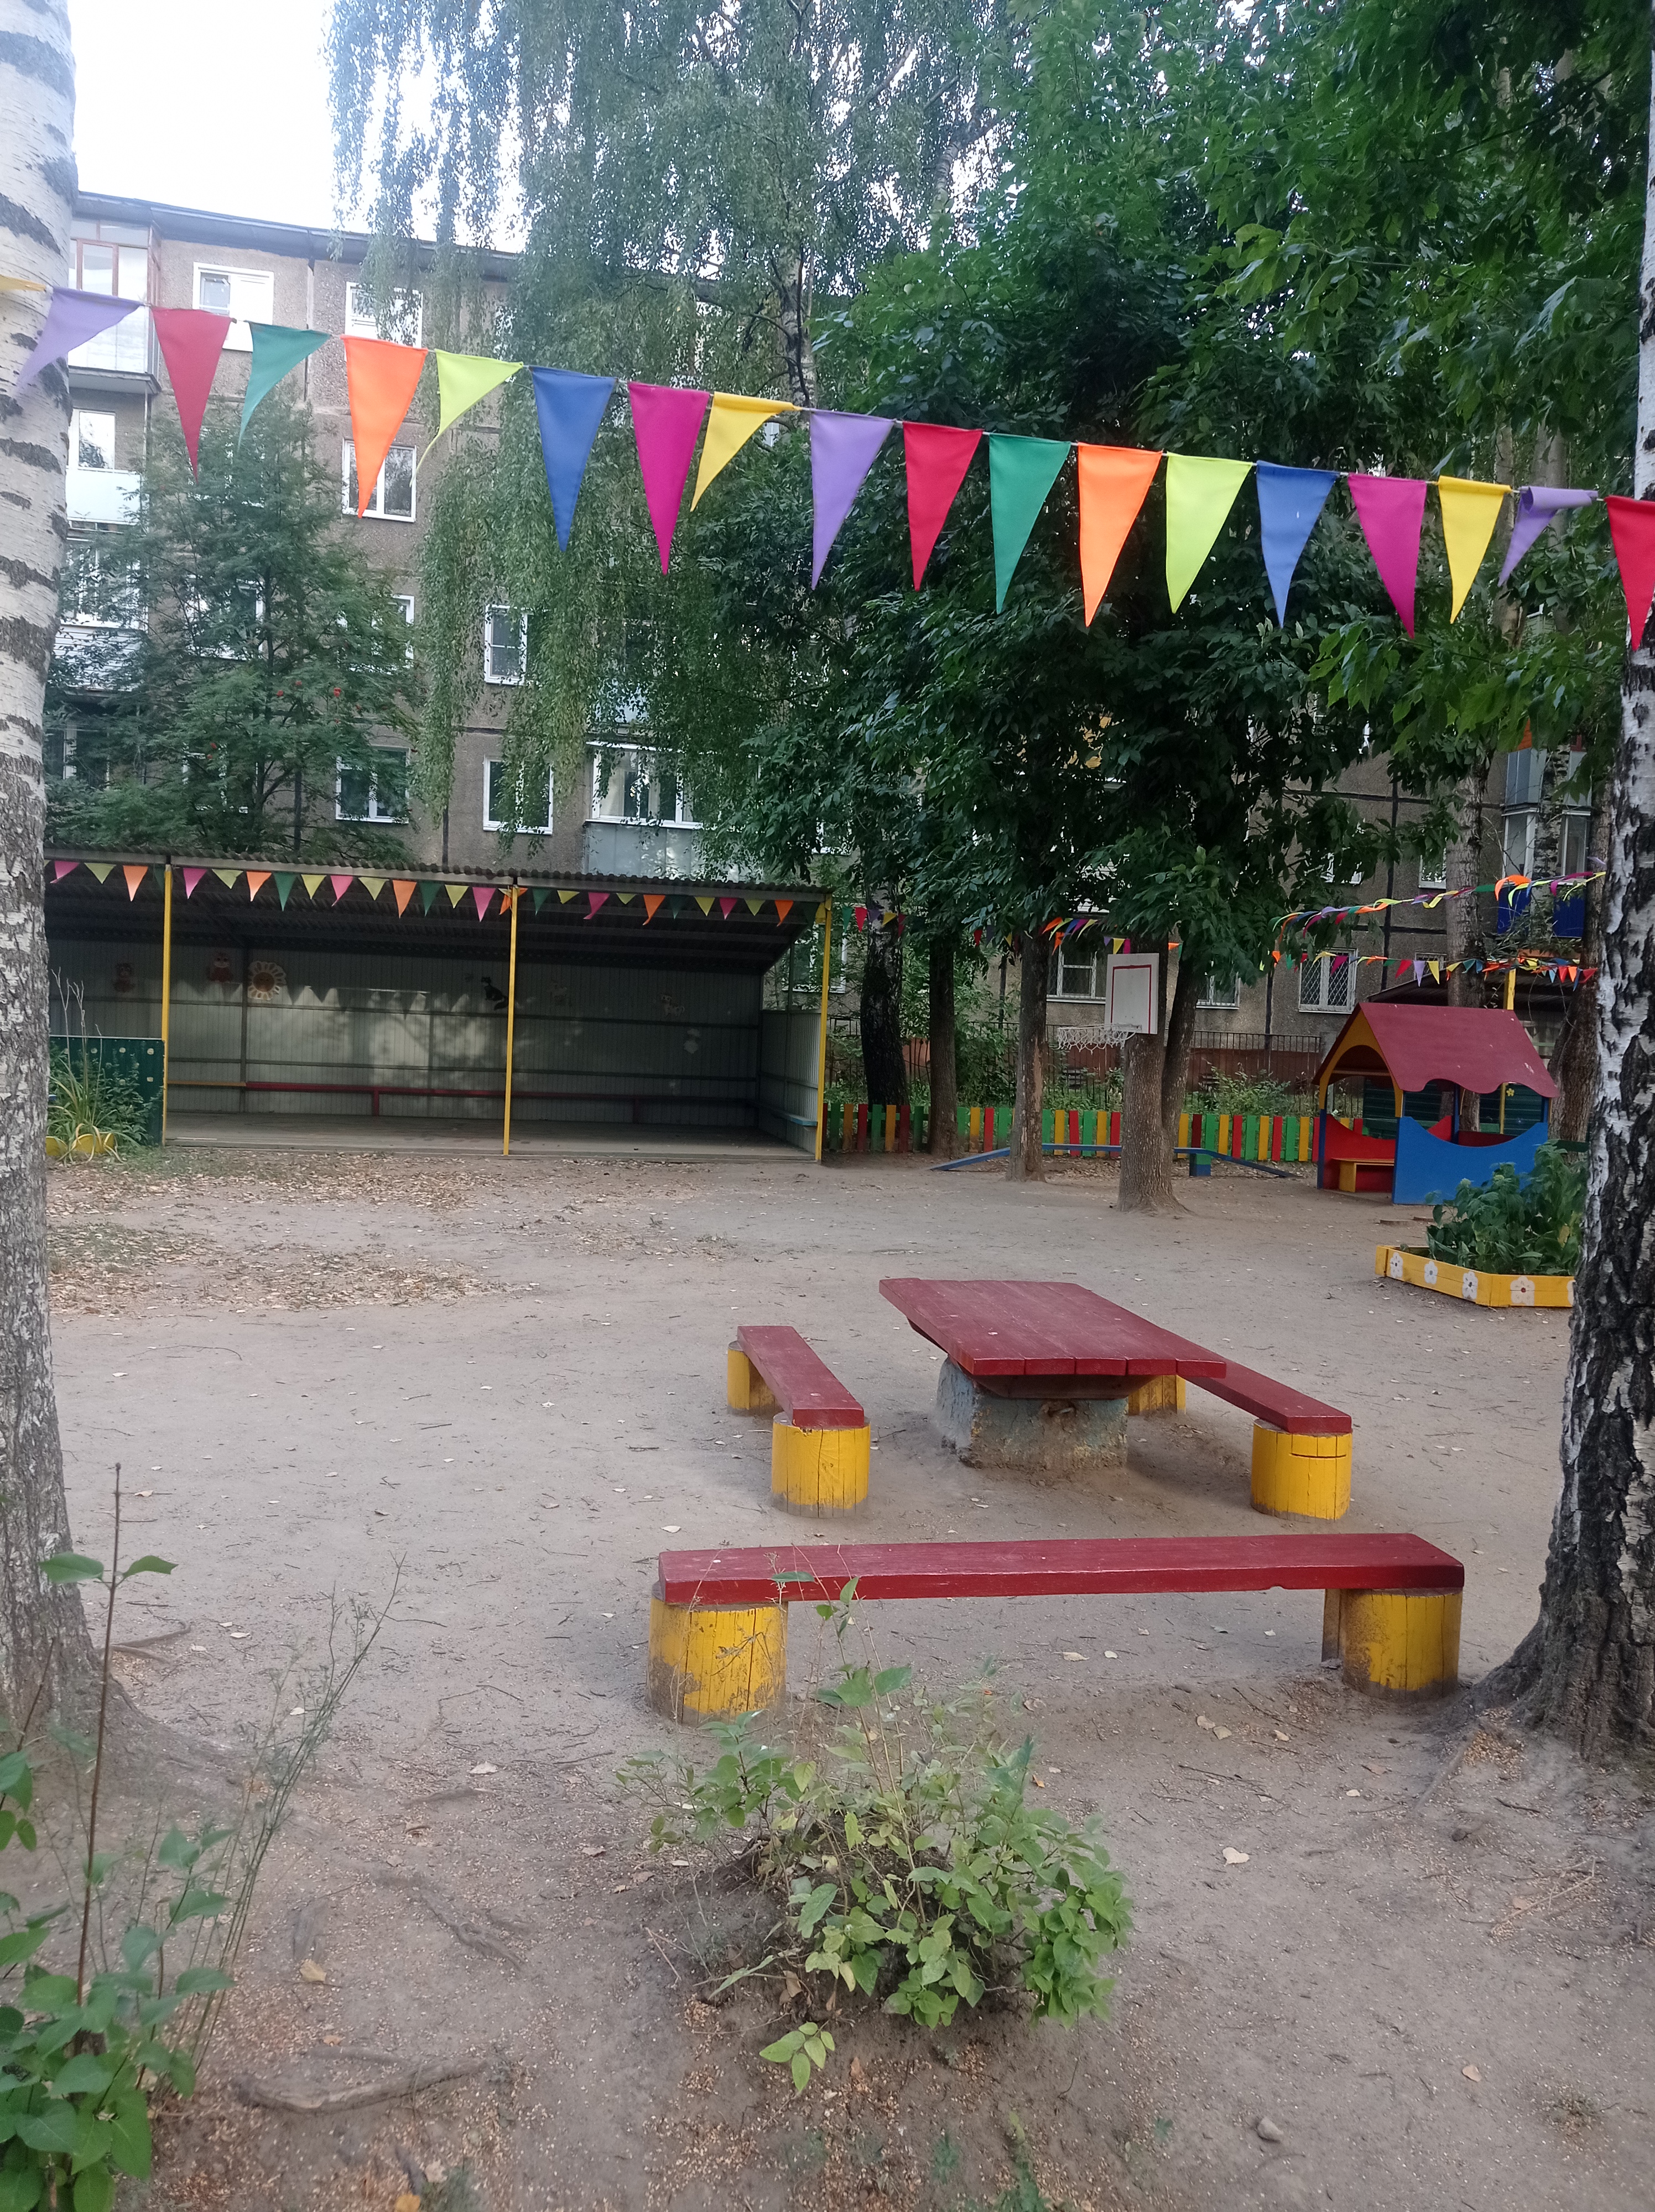 Участок детского сада 167 "Солнышко" на проспекте Строителей.